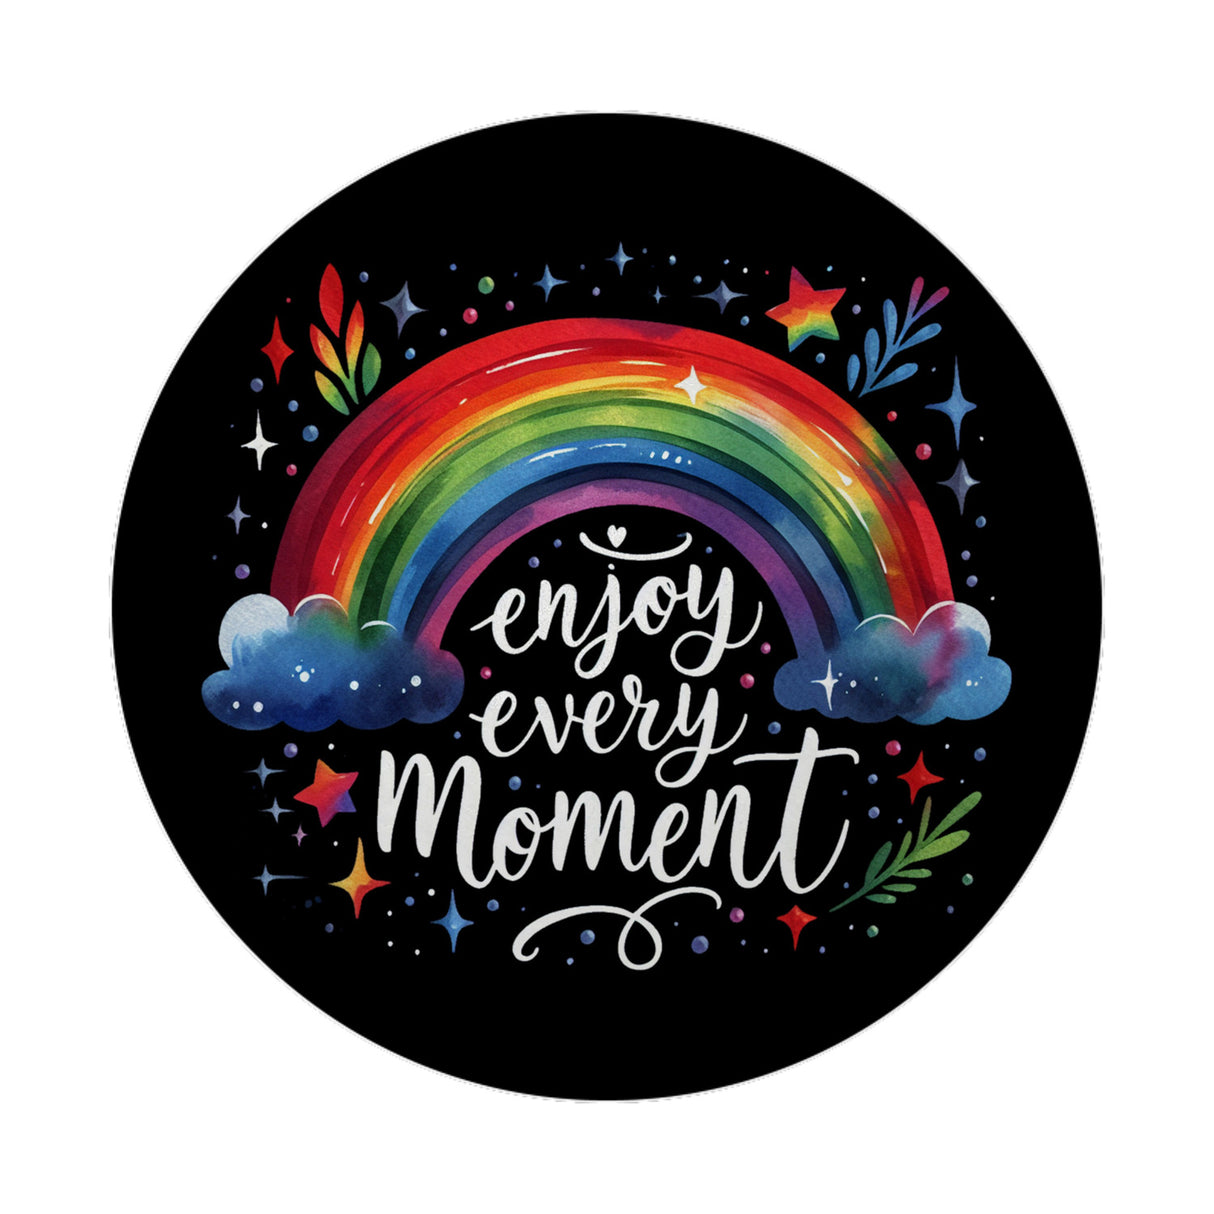 Regenbogen Magnet rund mit Spruch Enjoy every moment